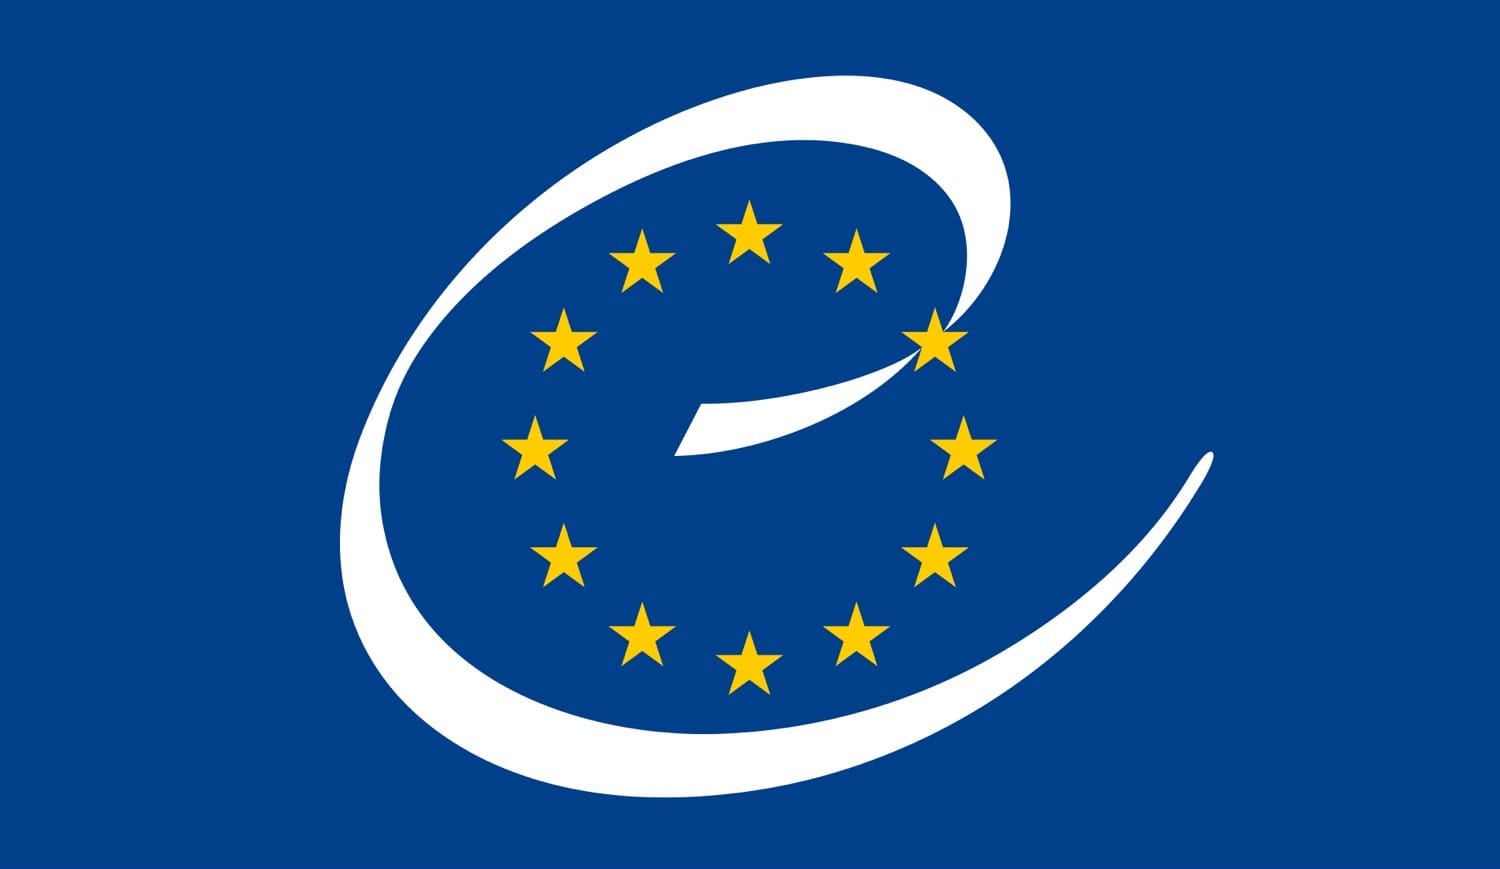 Le drapeau européen - Le Conseil de l'Europe en bref